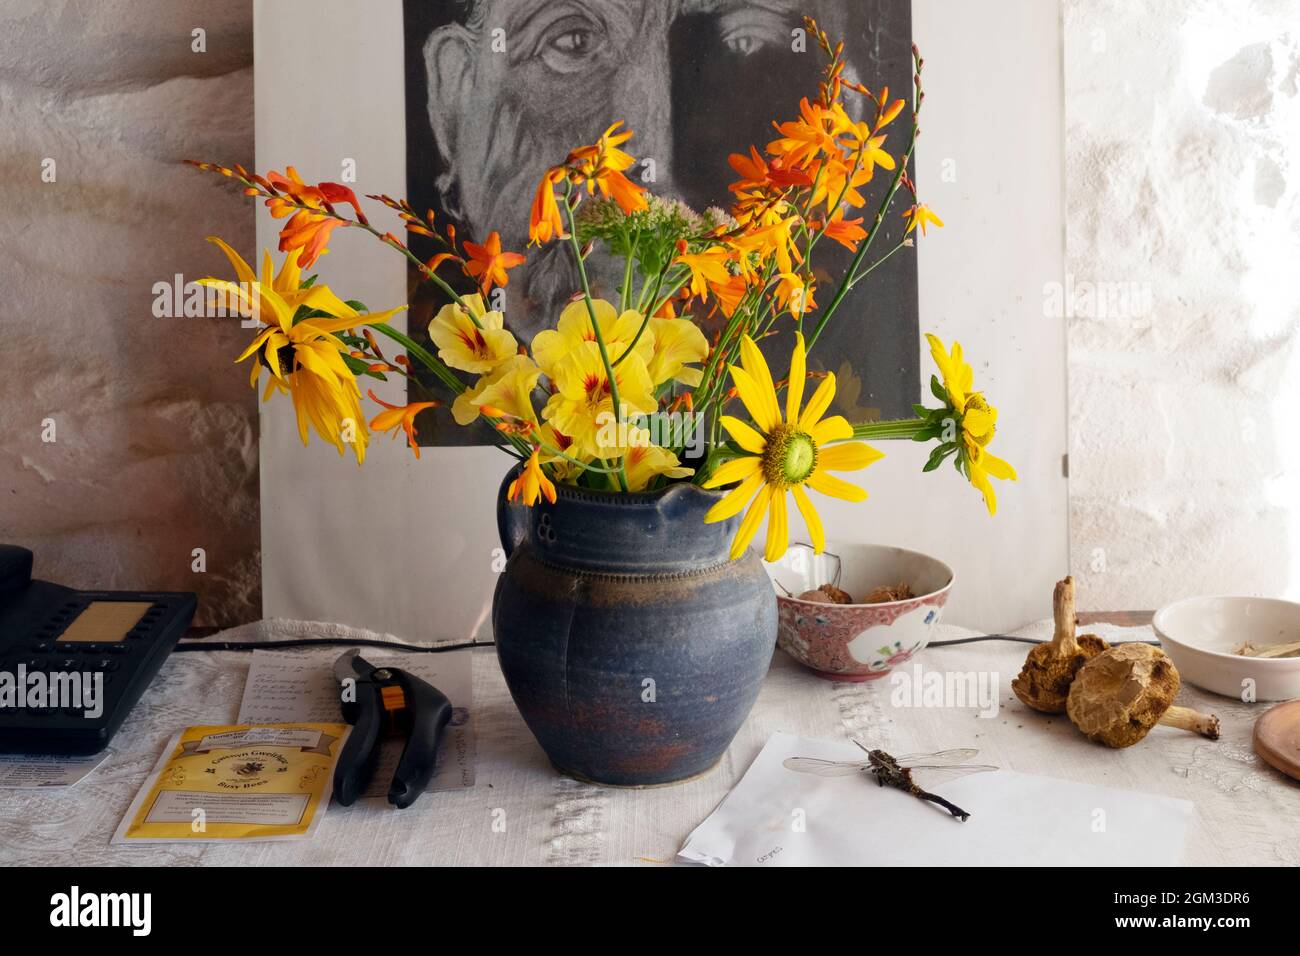 Fleurs coupées jaune et orange dans un vase en poterie bleu sur la poitrine des tiroirs buffets avec photo secaturs libellule maison intérieur UK KATHY DEWITT Banque D'Images